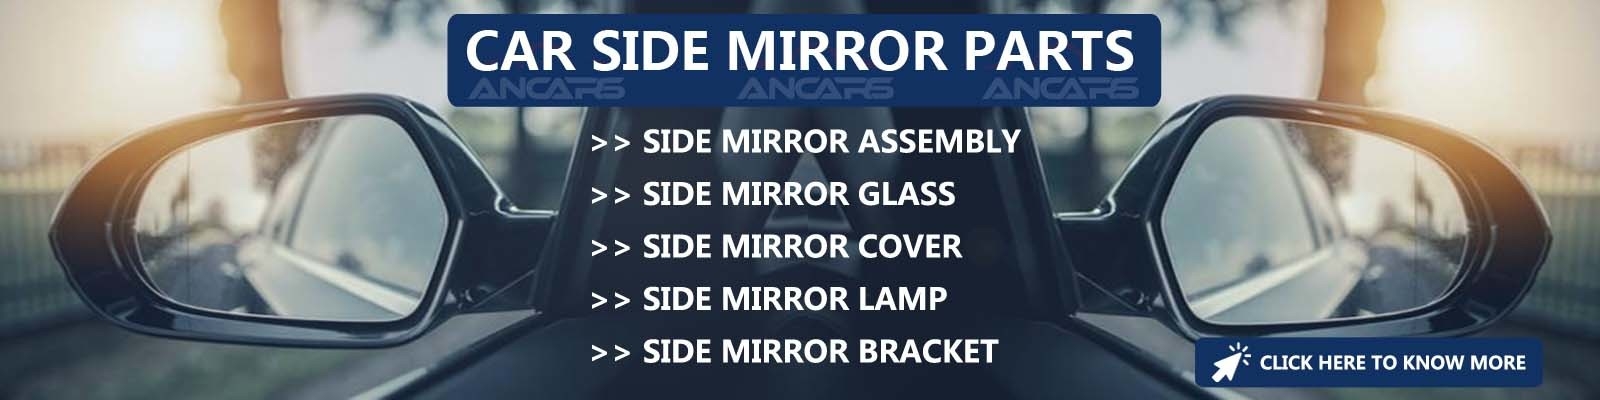 Car Side Mirror Parts